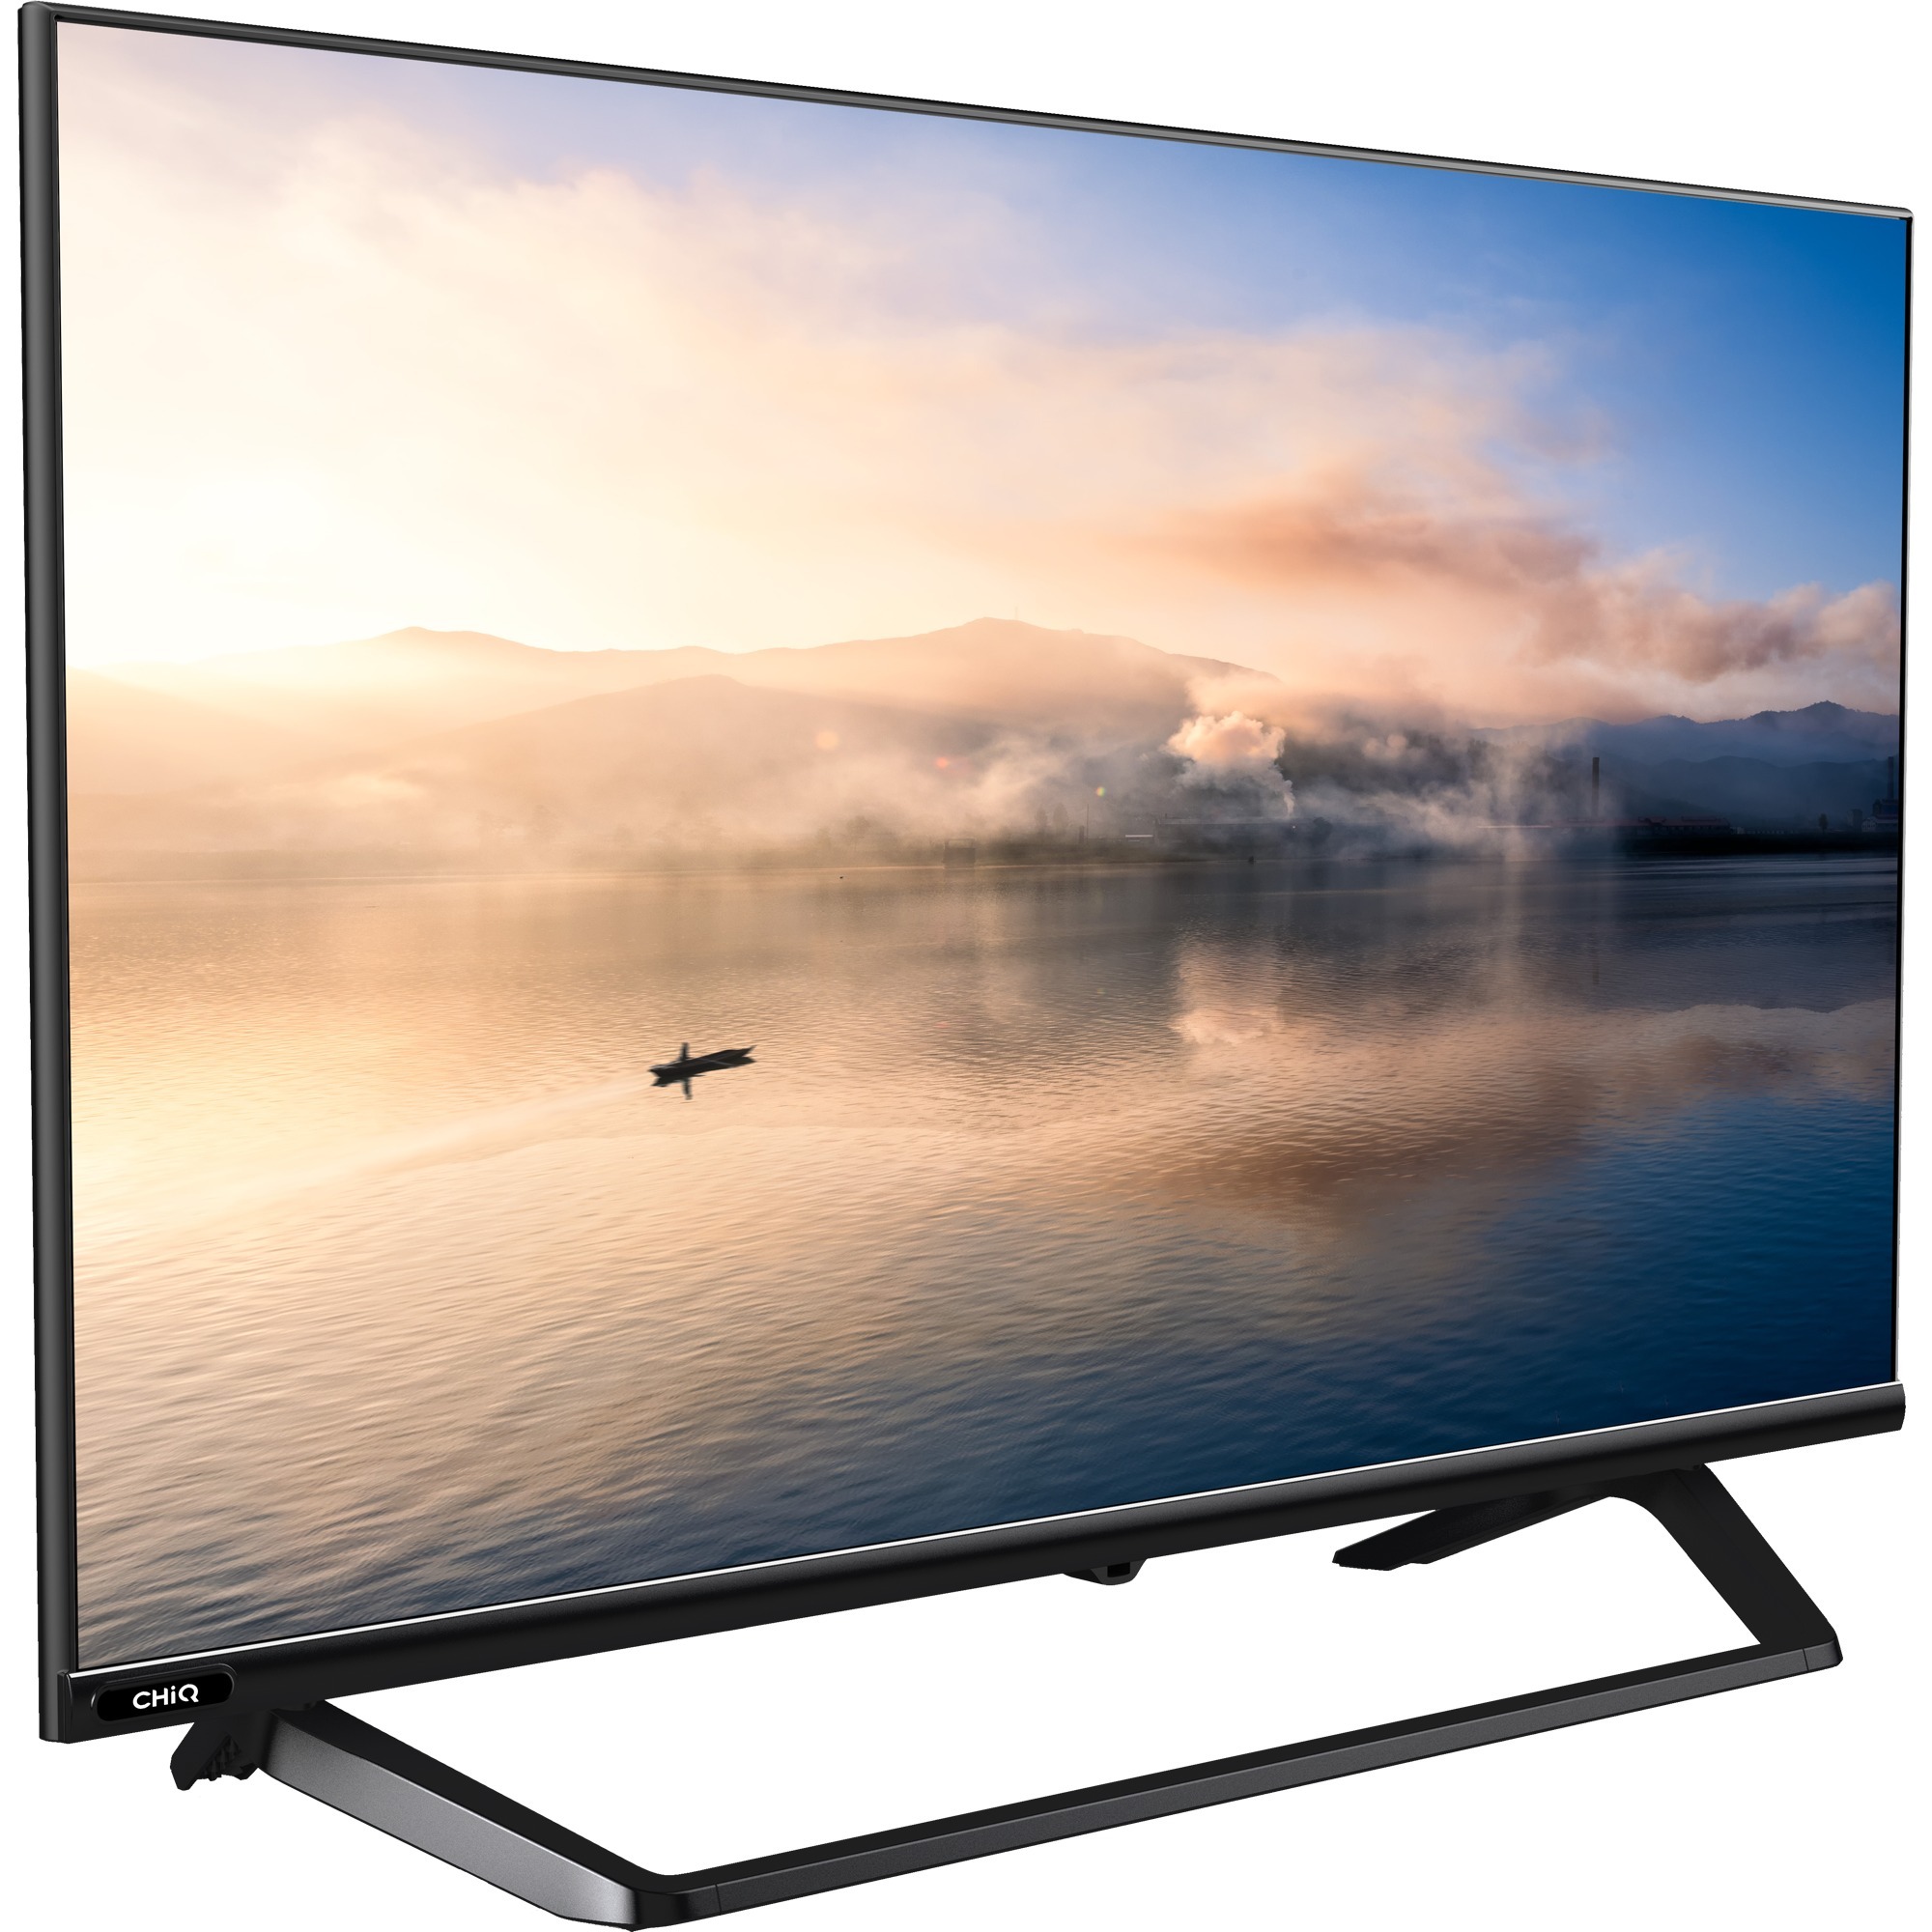 Image of Alternate - L32H7SX, LED-Fernseher online einkaufen bei Alternate